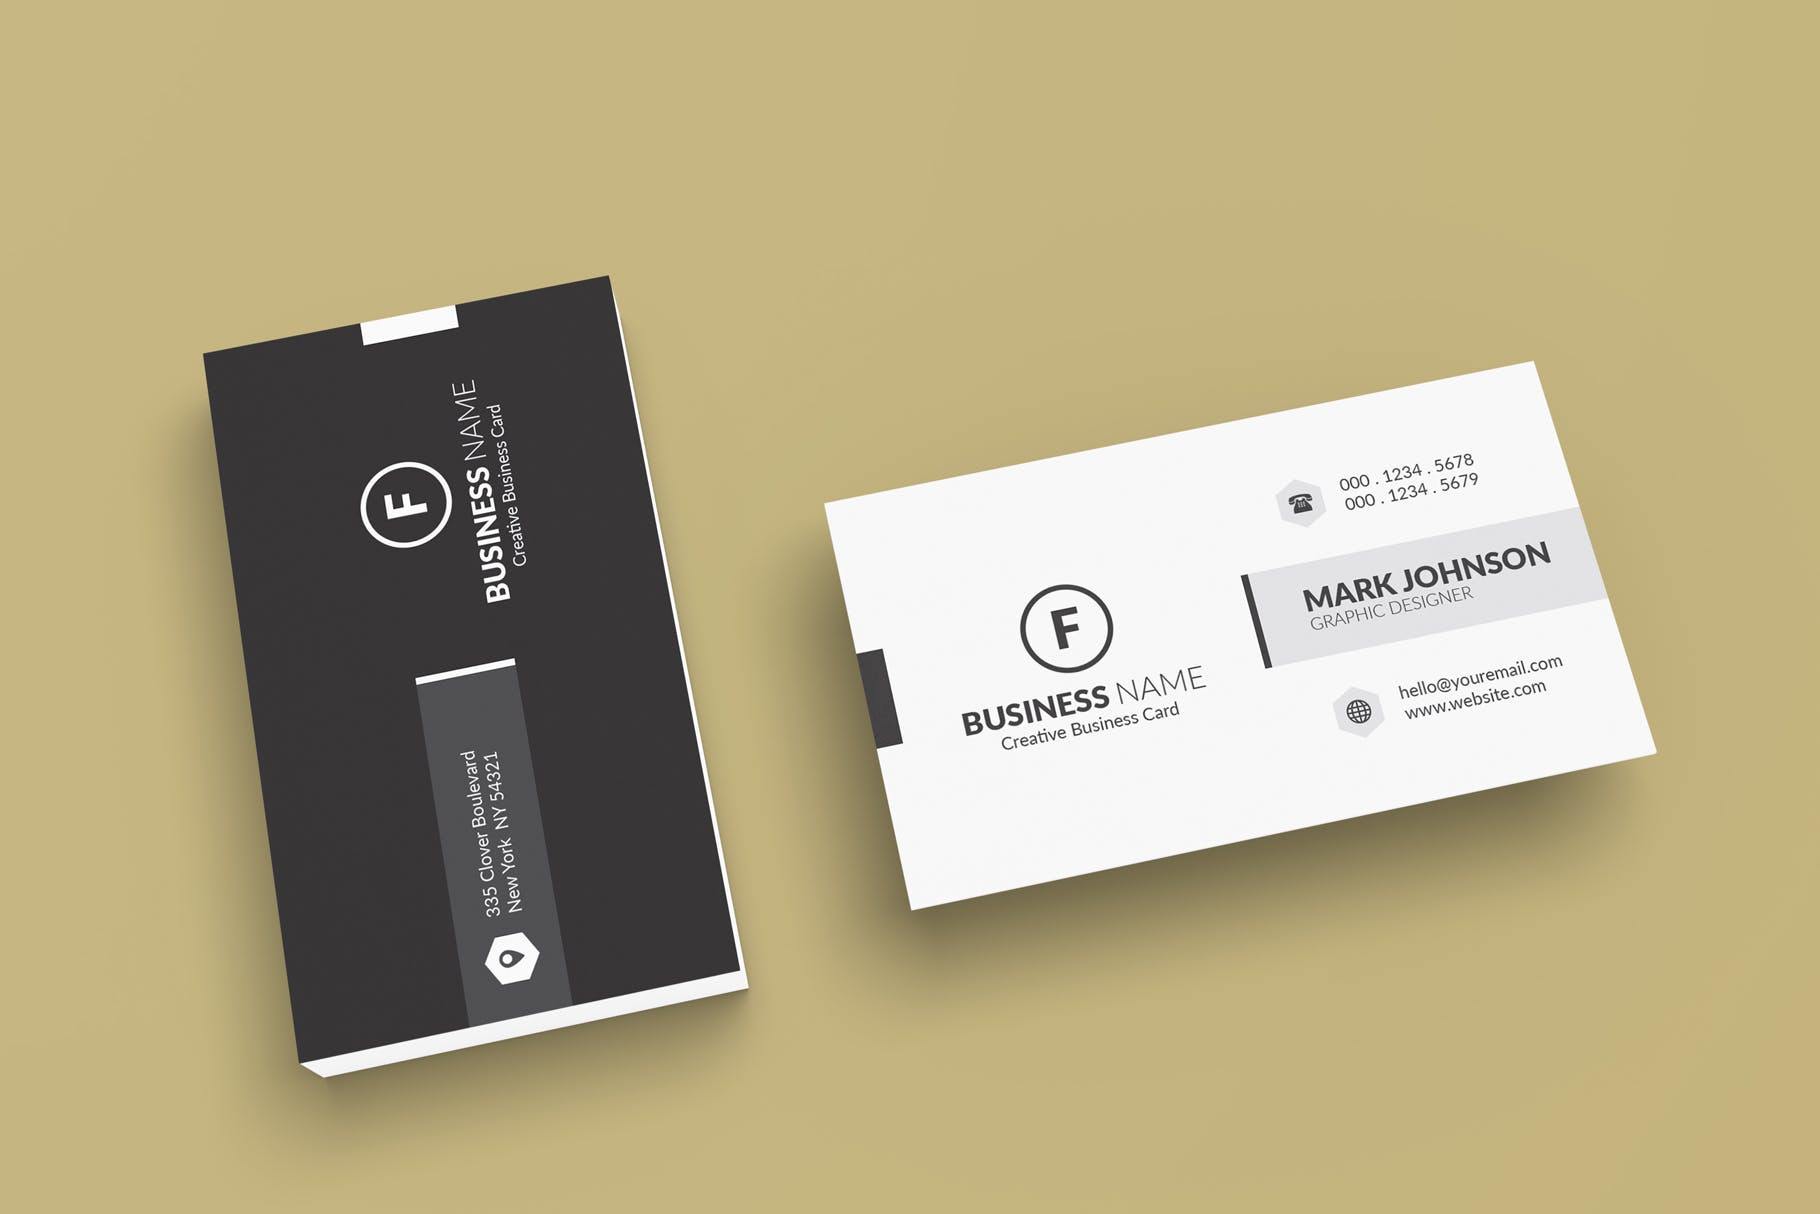 极简设计风格名片设计效果图素材中国精选 Minimalist Business Cards Mockup插图(3)